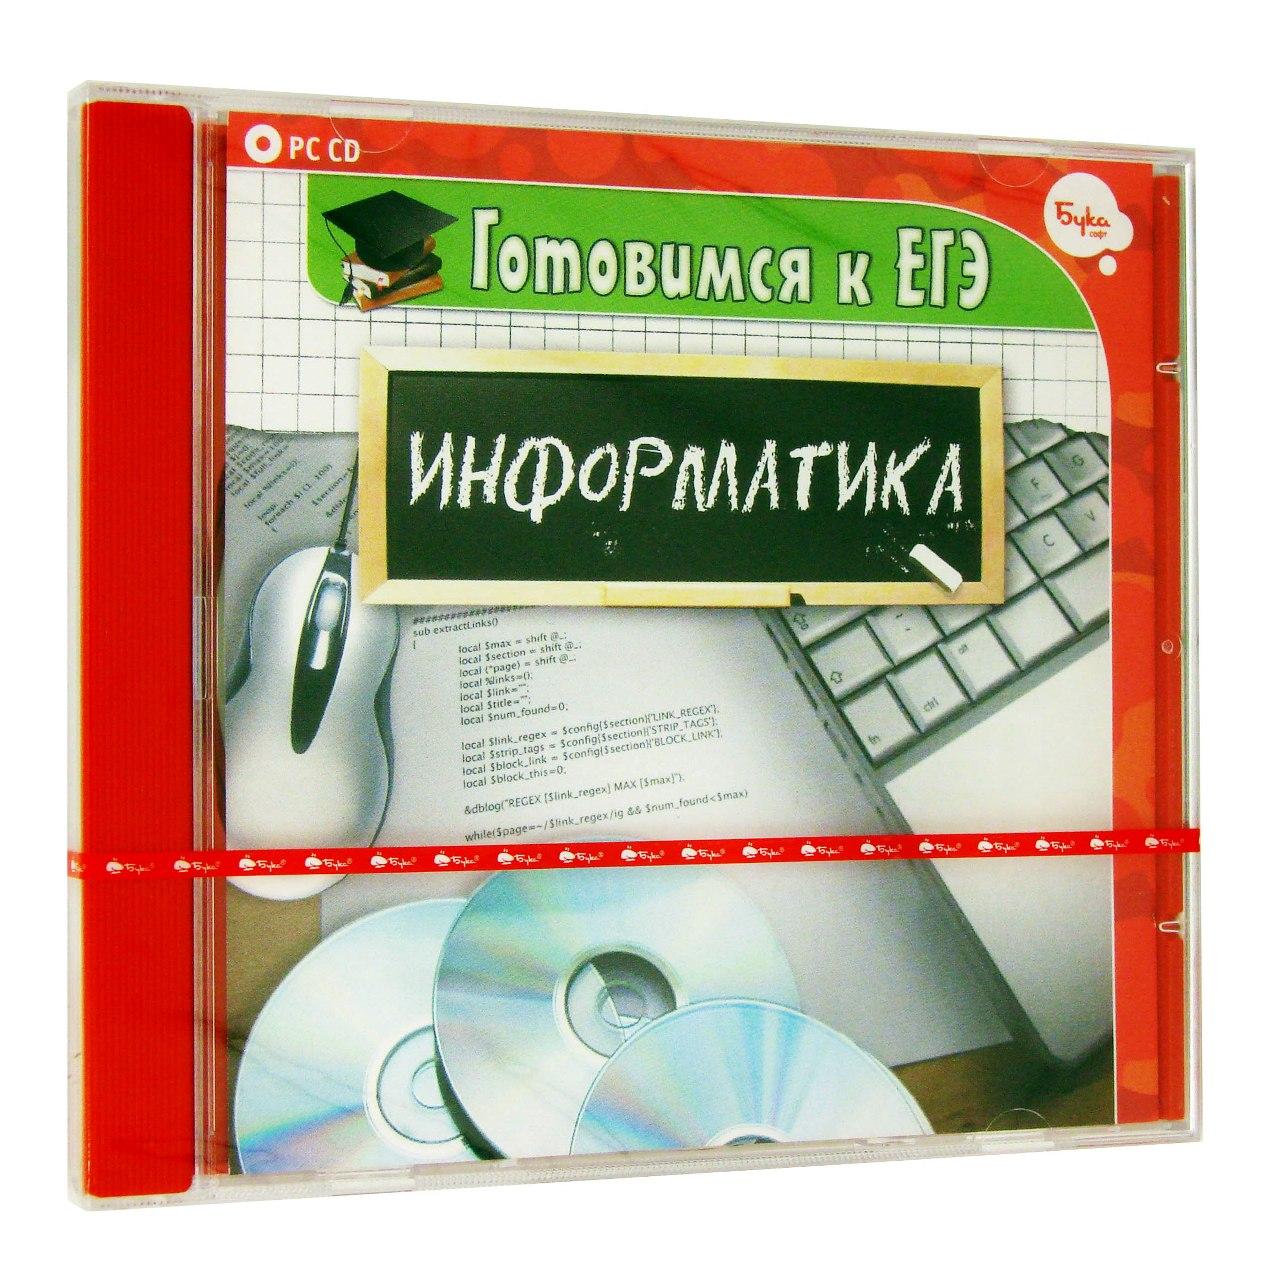 Компьютерный компакт-диск Готовимся к ЕГЭ. Информатика (ПК), фирма "Бука", 1CD